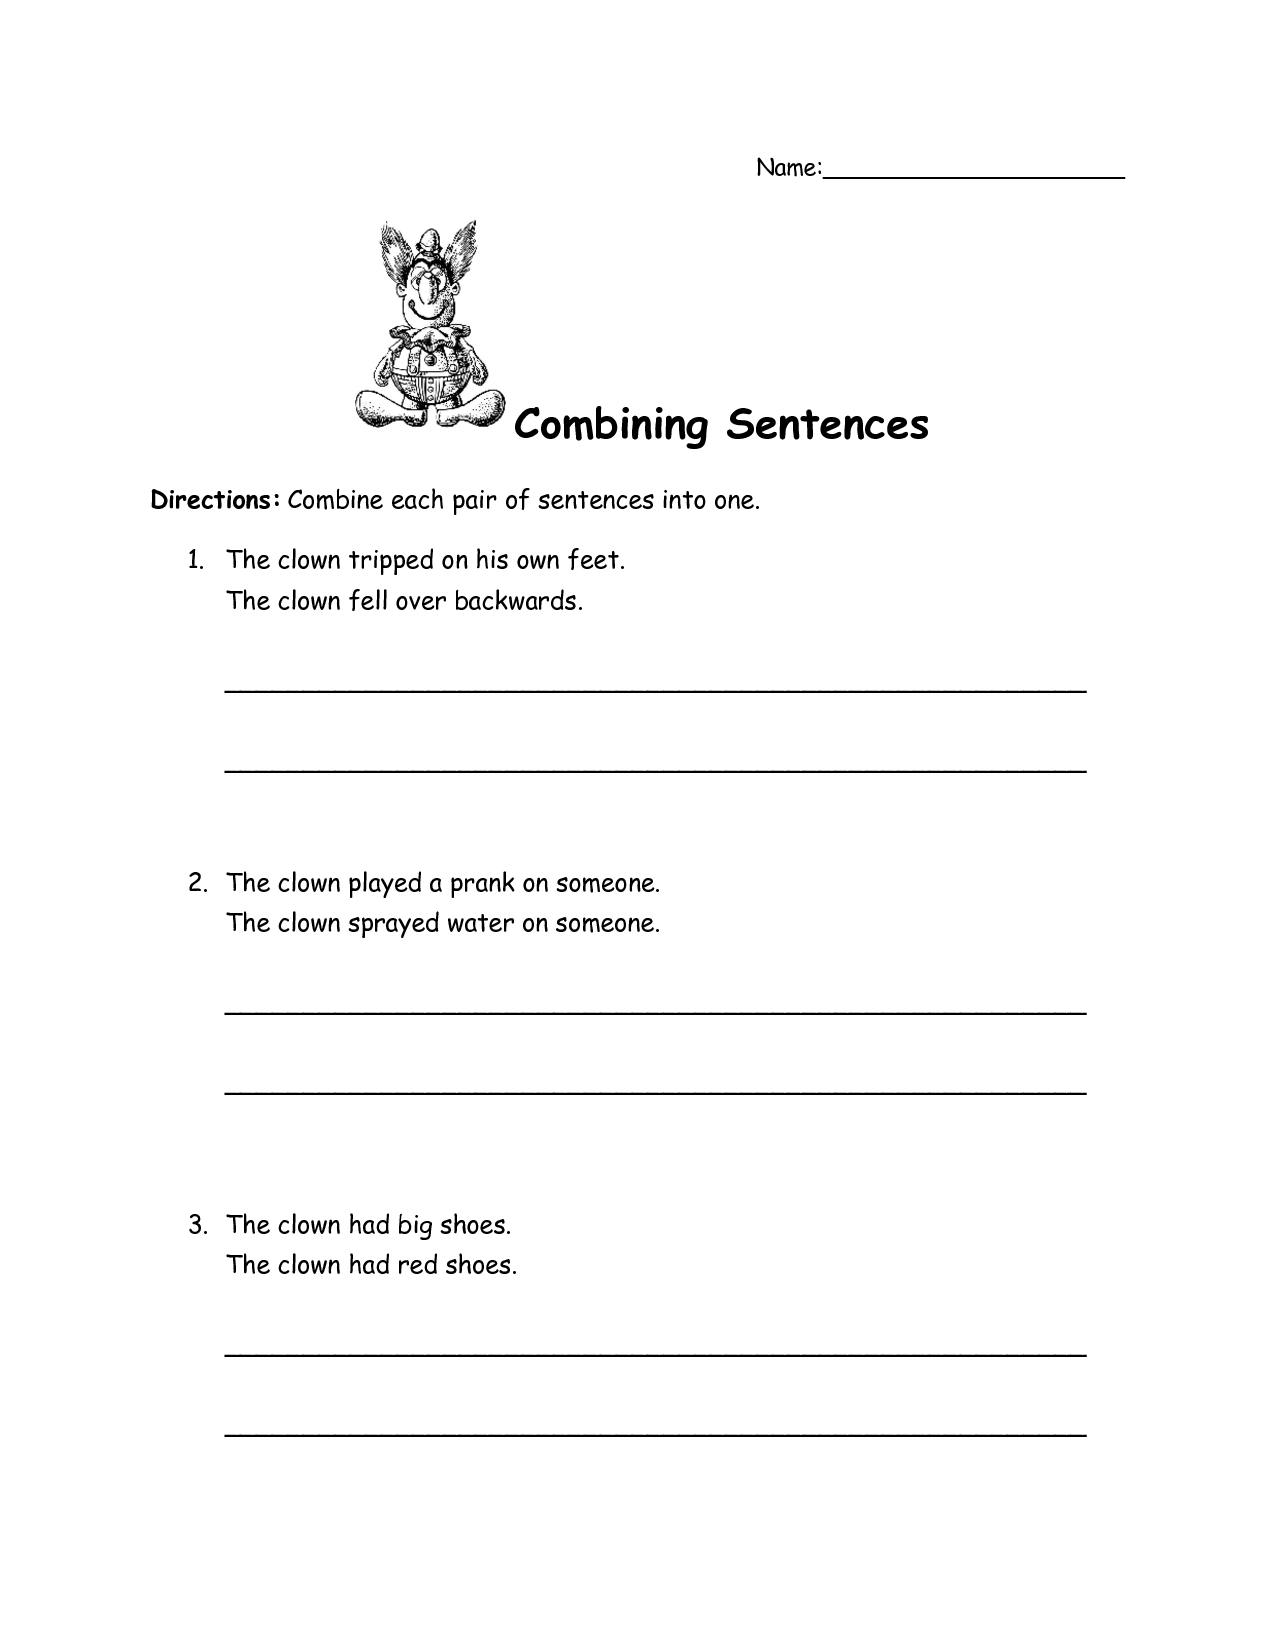 combining-sentences-worksheet-pdf-leisure-nature